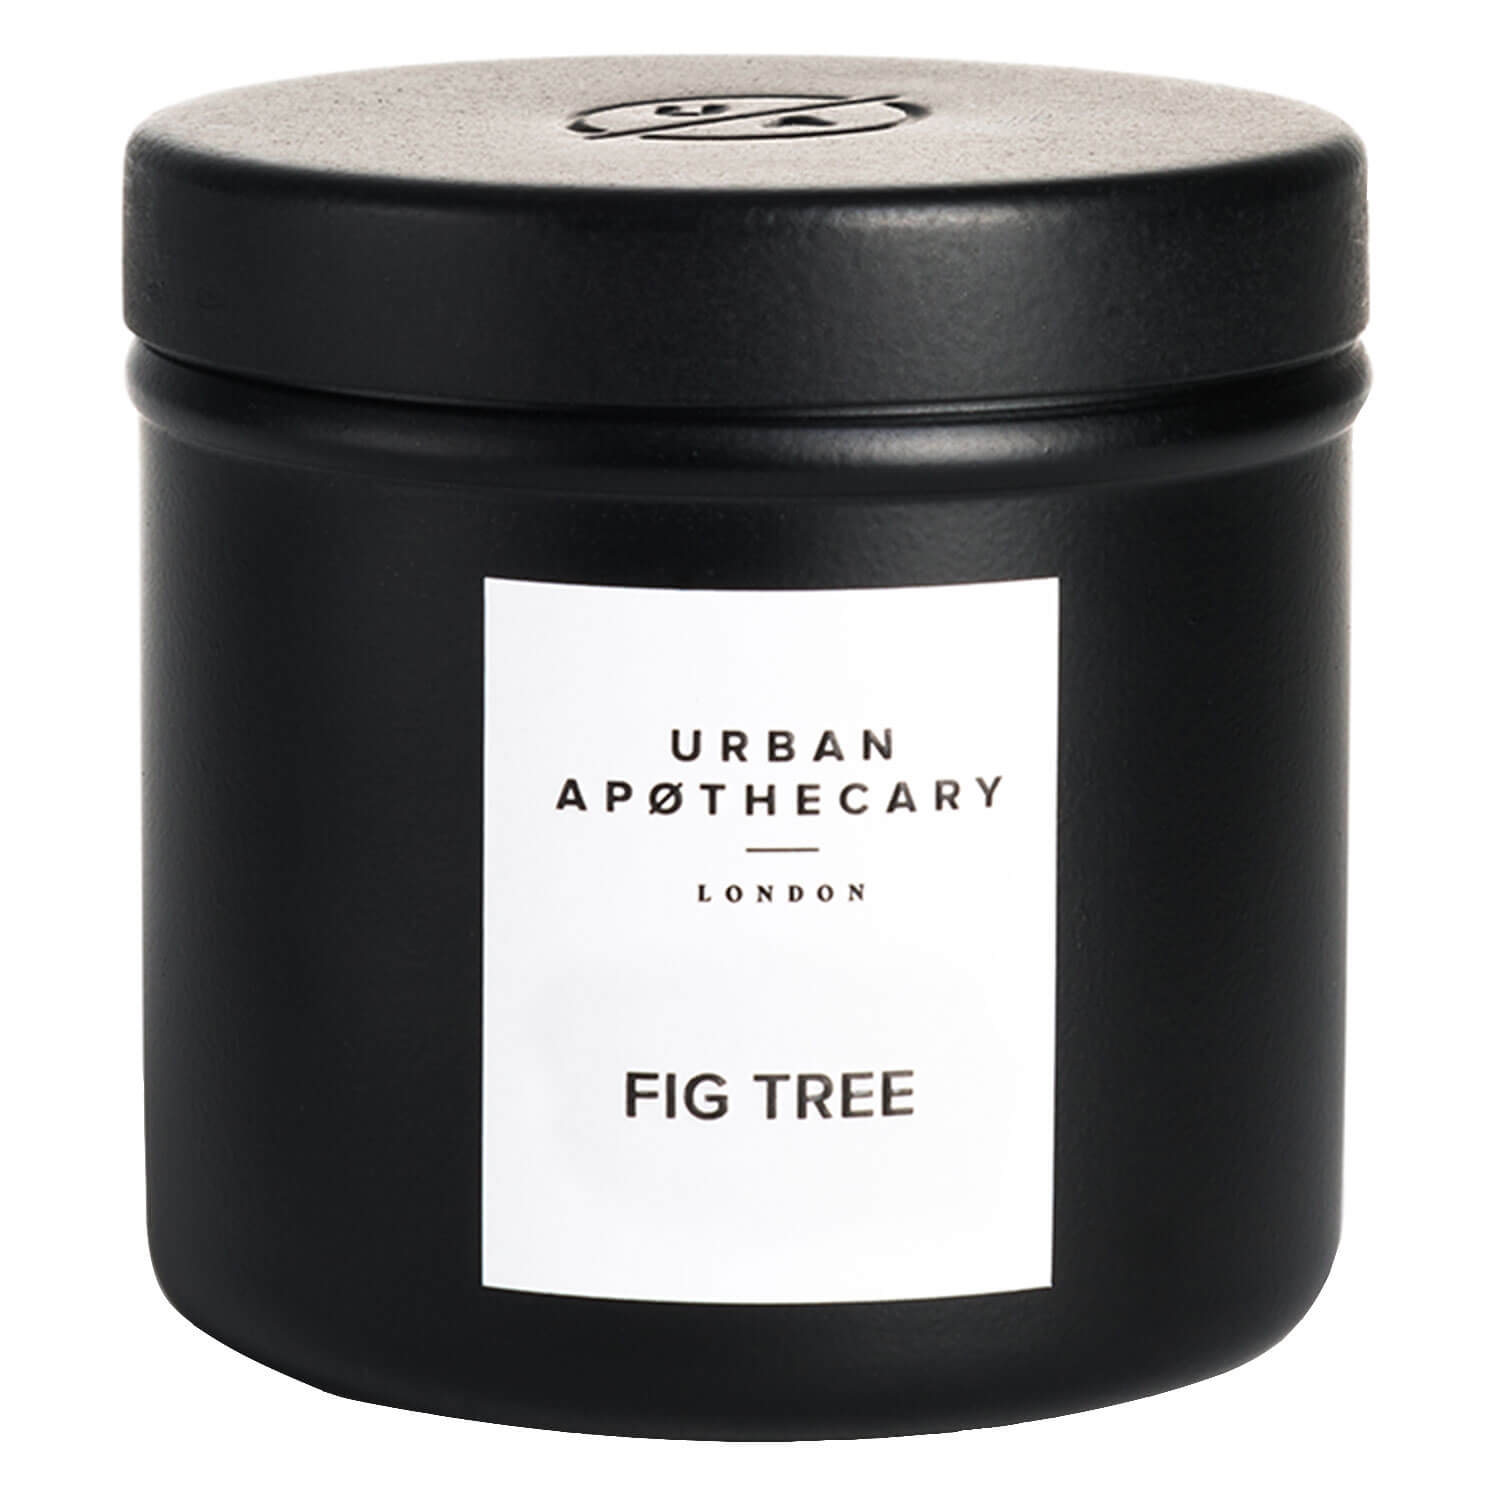 Produktbild von Urban Apothecary - Luxury Iron Travel Candle Fig Tree